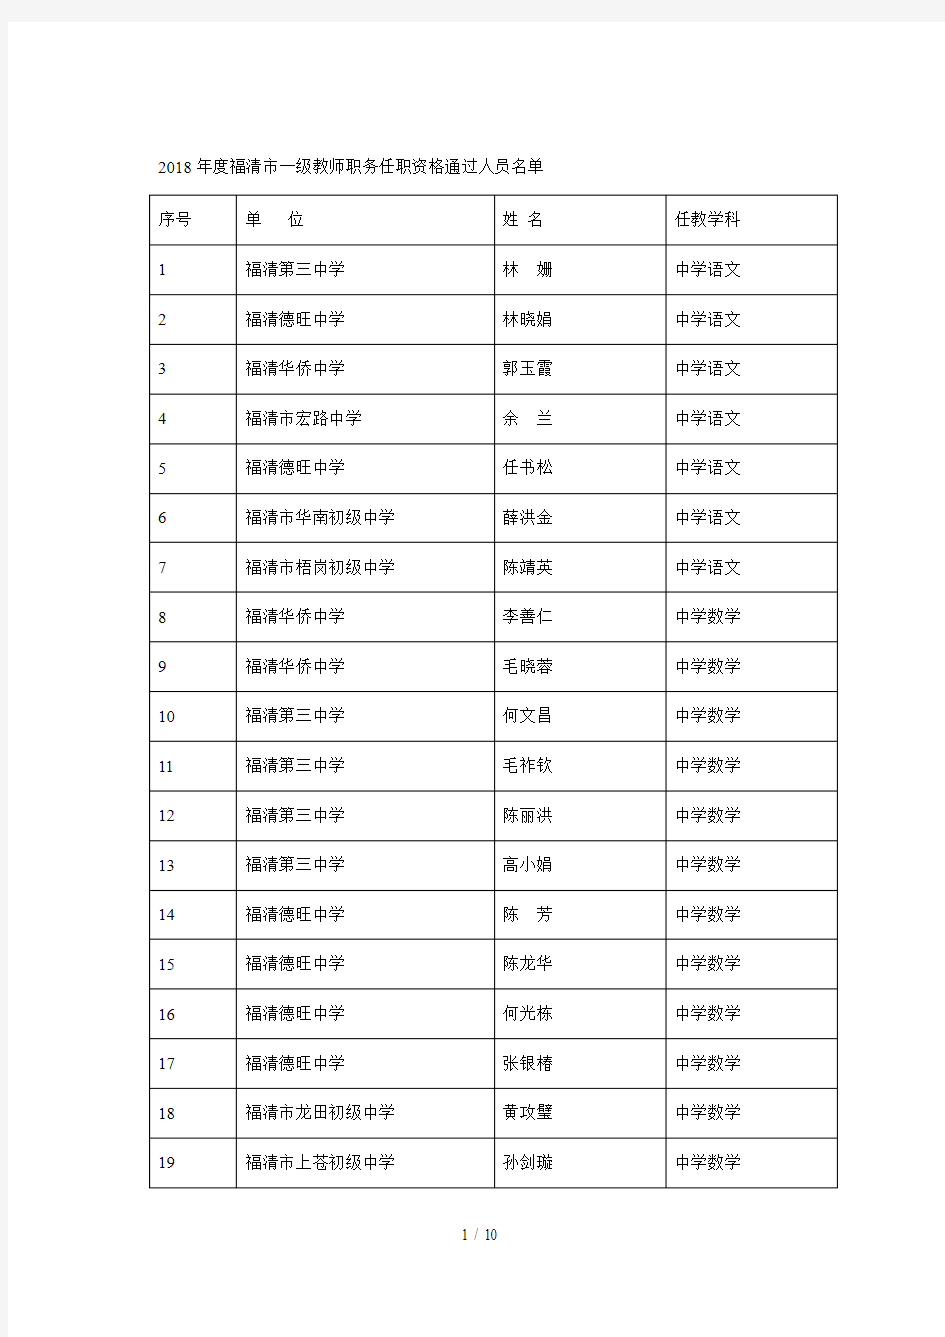 2018年度福清市一级教师职务任职资格通过人员名单